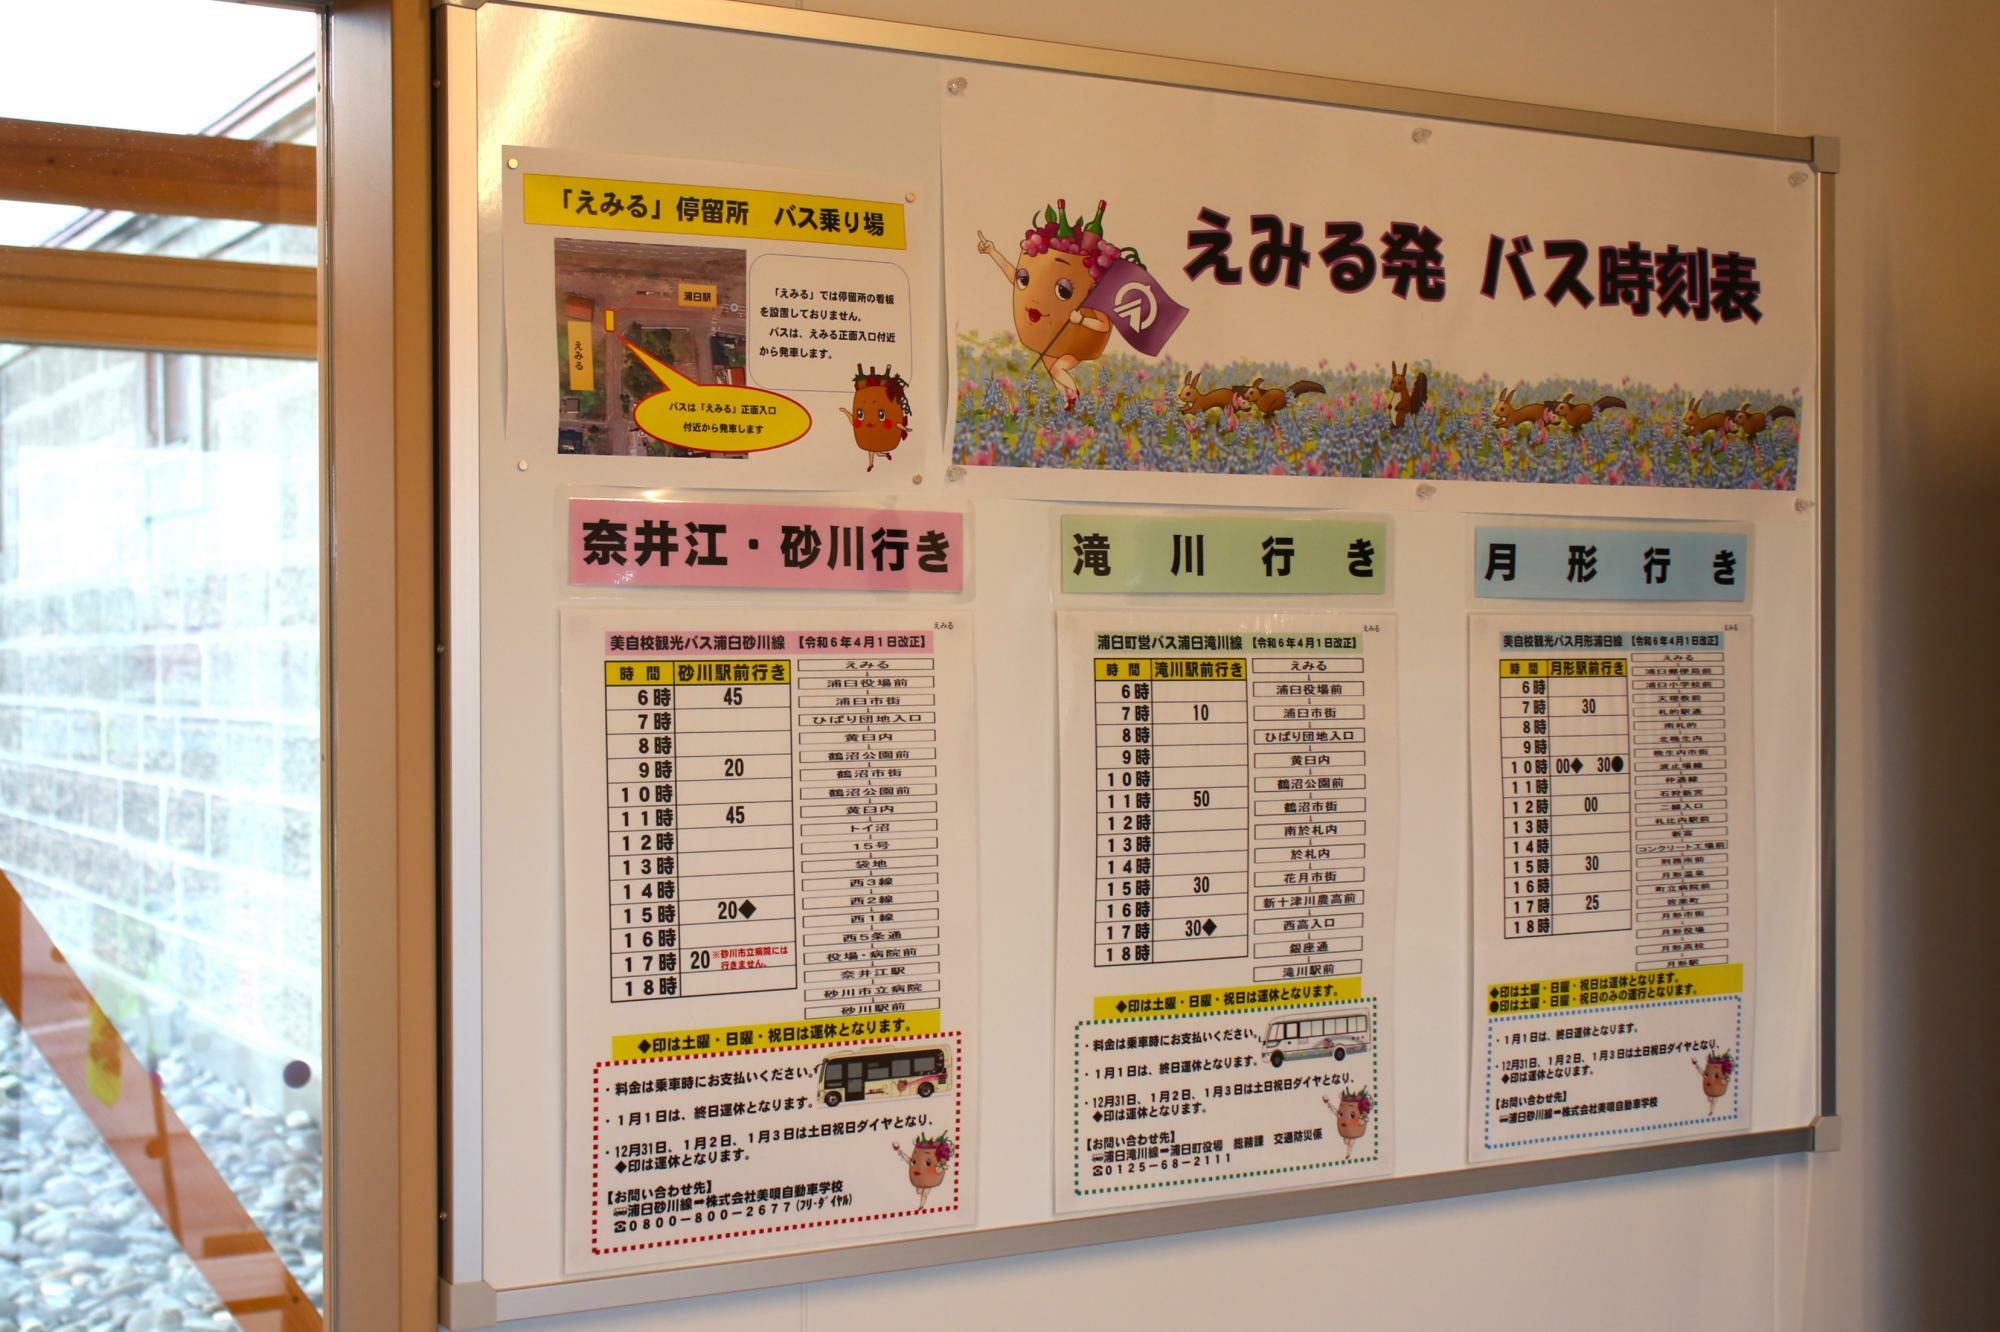 えみる発バス時刻表(奈井江・砂川、滝川、月形行きの3系統)